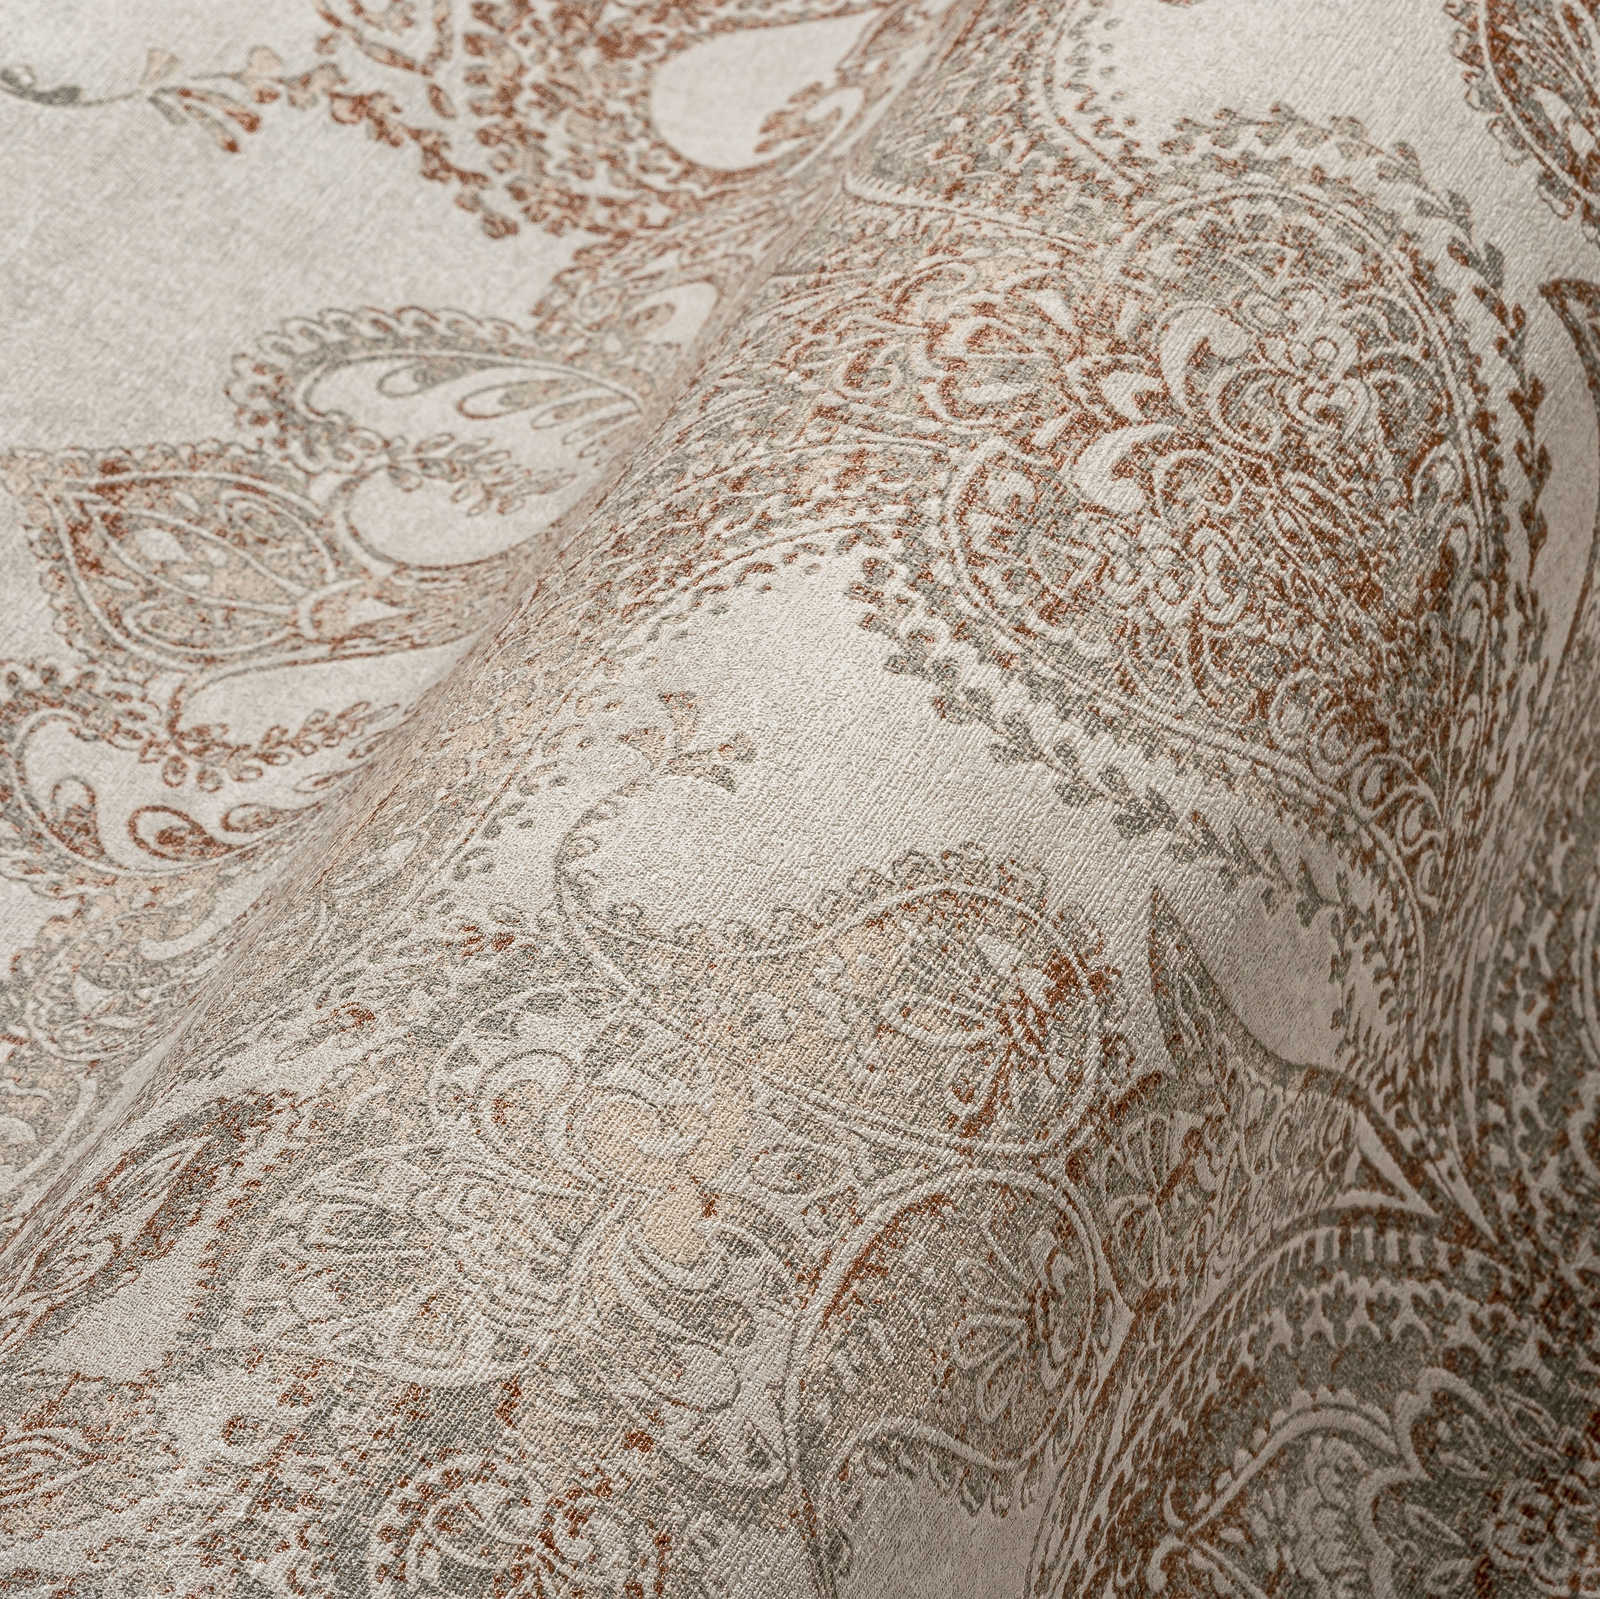             Papier peint baroque classique avec ornements - beige, gris, rouge-brun
        